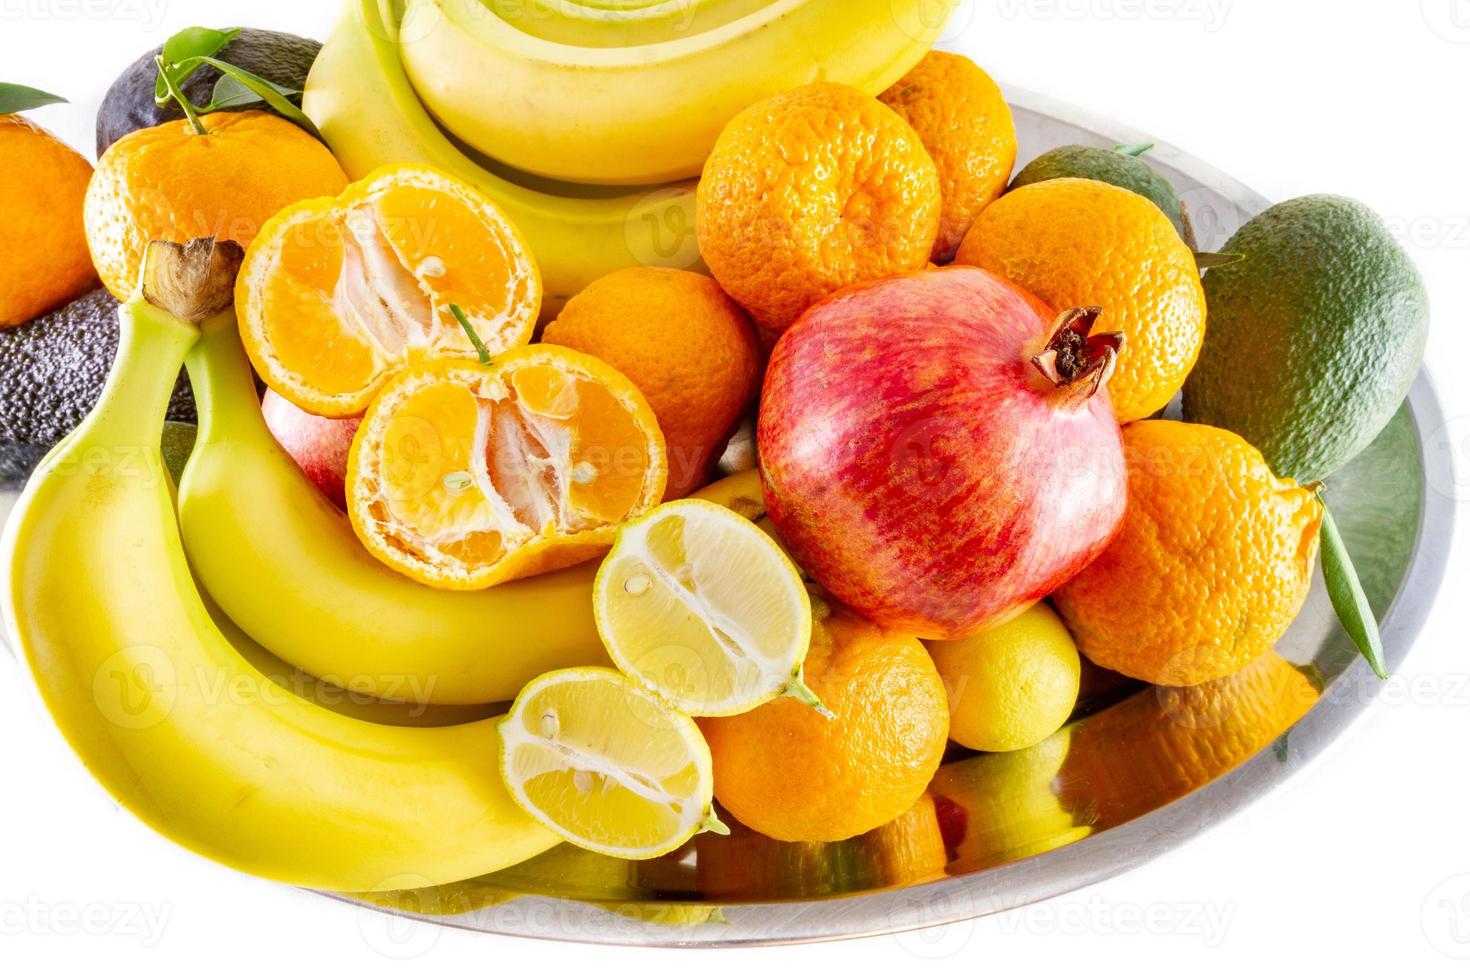 verschiedene Obst- und Gemüseteller mit Bananen, Granatapfel, Zitrone, Mandarine und Avocado foto